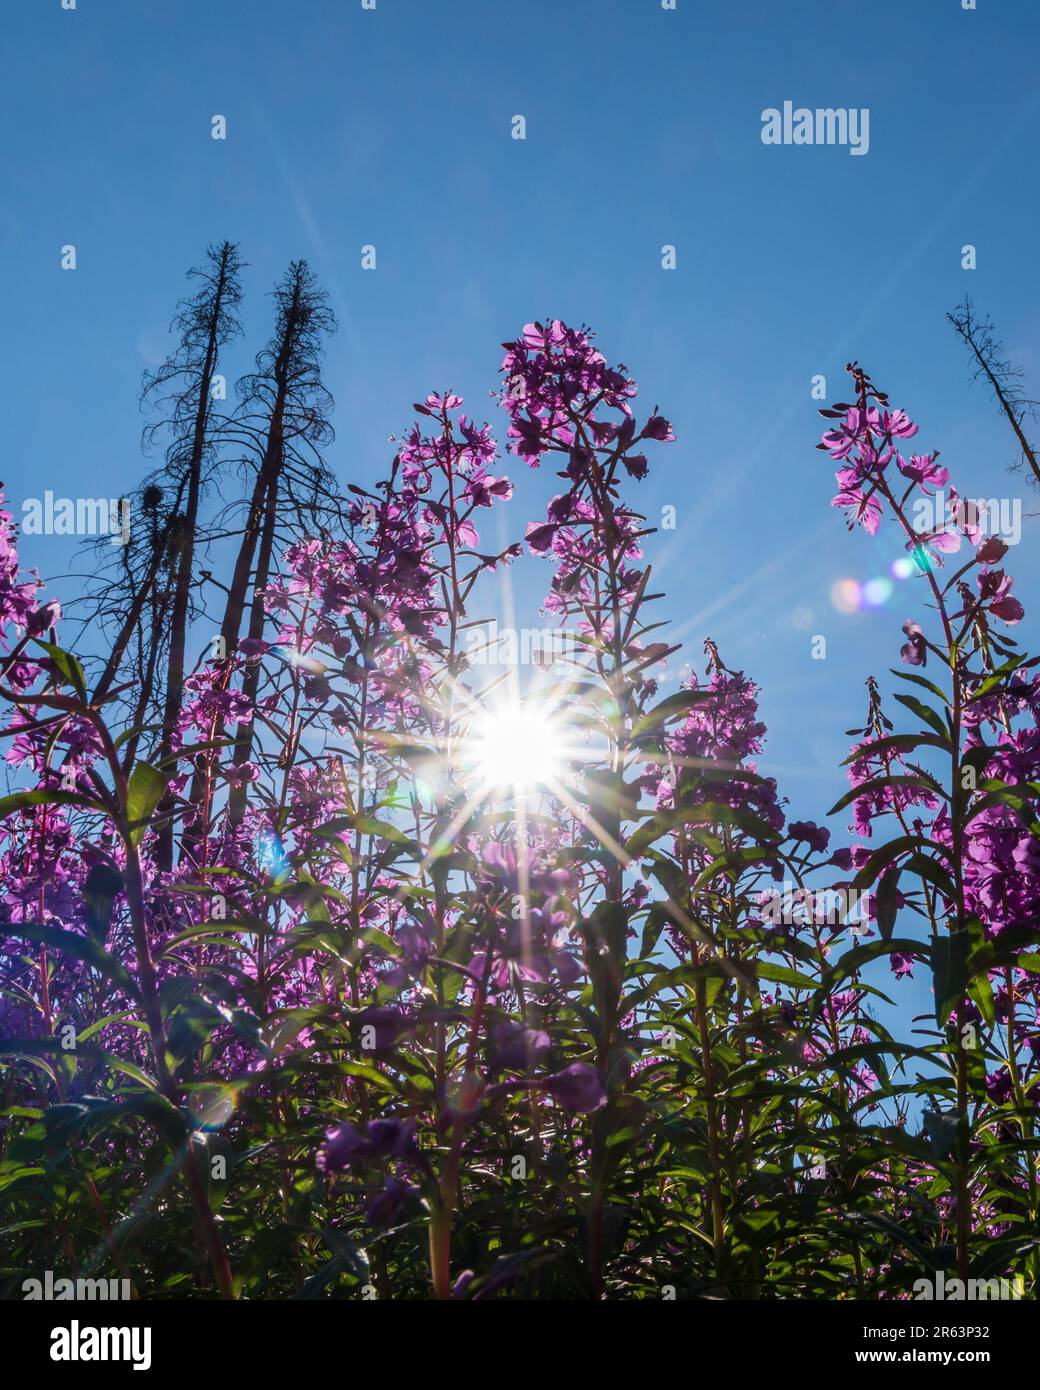 Wunderschöne Feuerweed-Blumen mit Sonne, die durch die Blätter blickt, Stämme der atemberaubenden rosa, violetten Flora. Gesehen im Yukon Territory nahe Alaska, arktisch Stockfoto